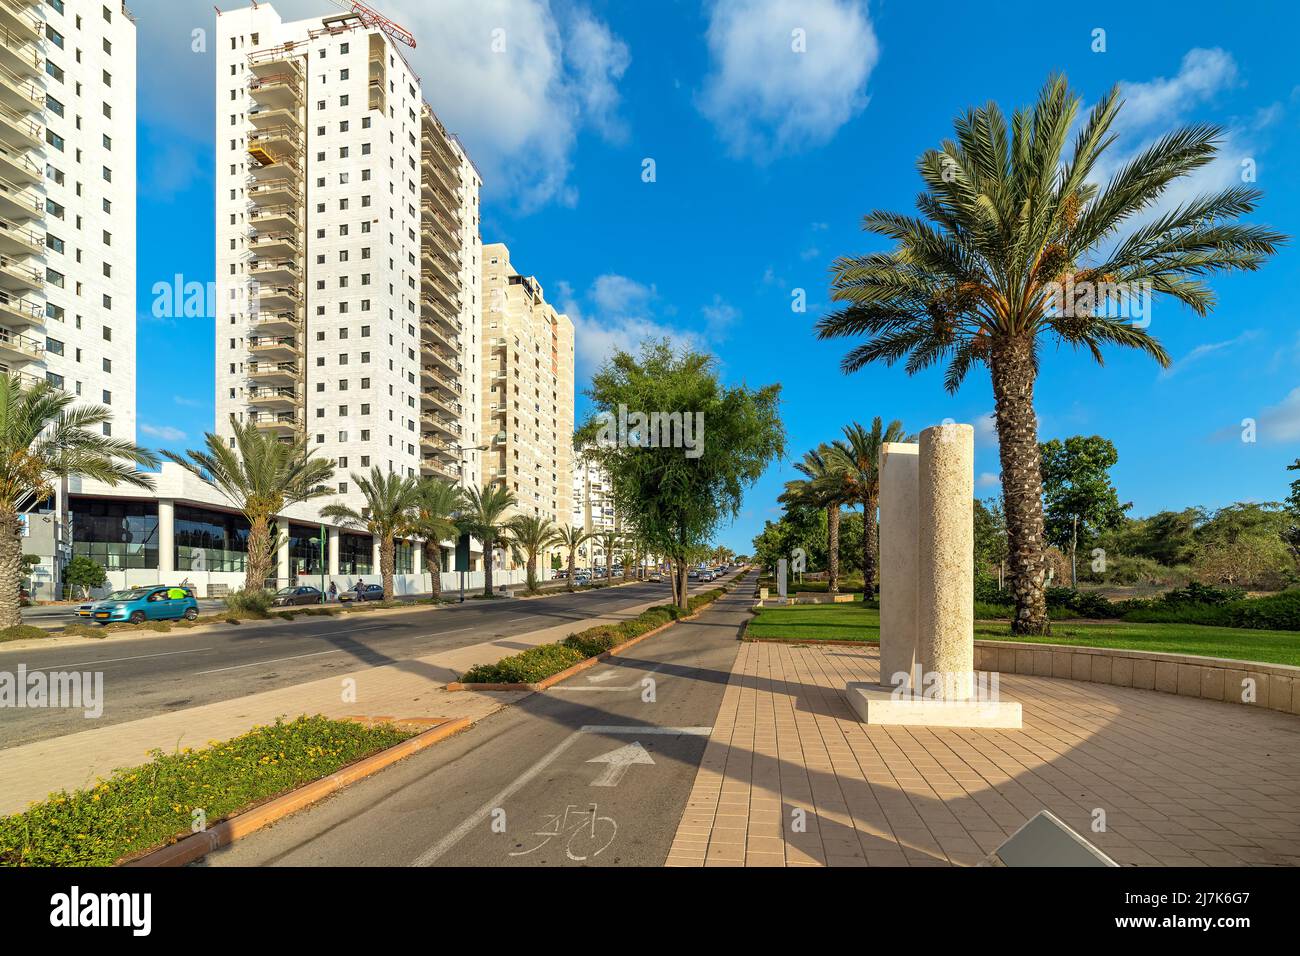 Trottoir et route urbaine le long de bâtiments résidentiels à plusieurs étages sous ciel bleu à Ashkelon, Israël. Banque D'Images